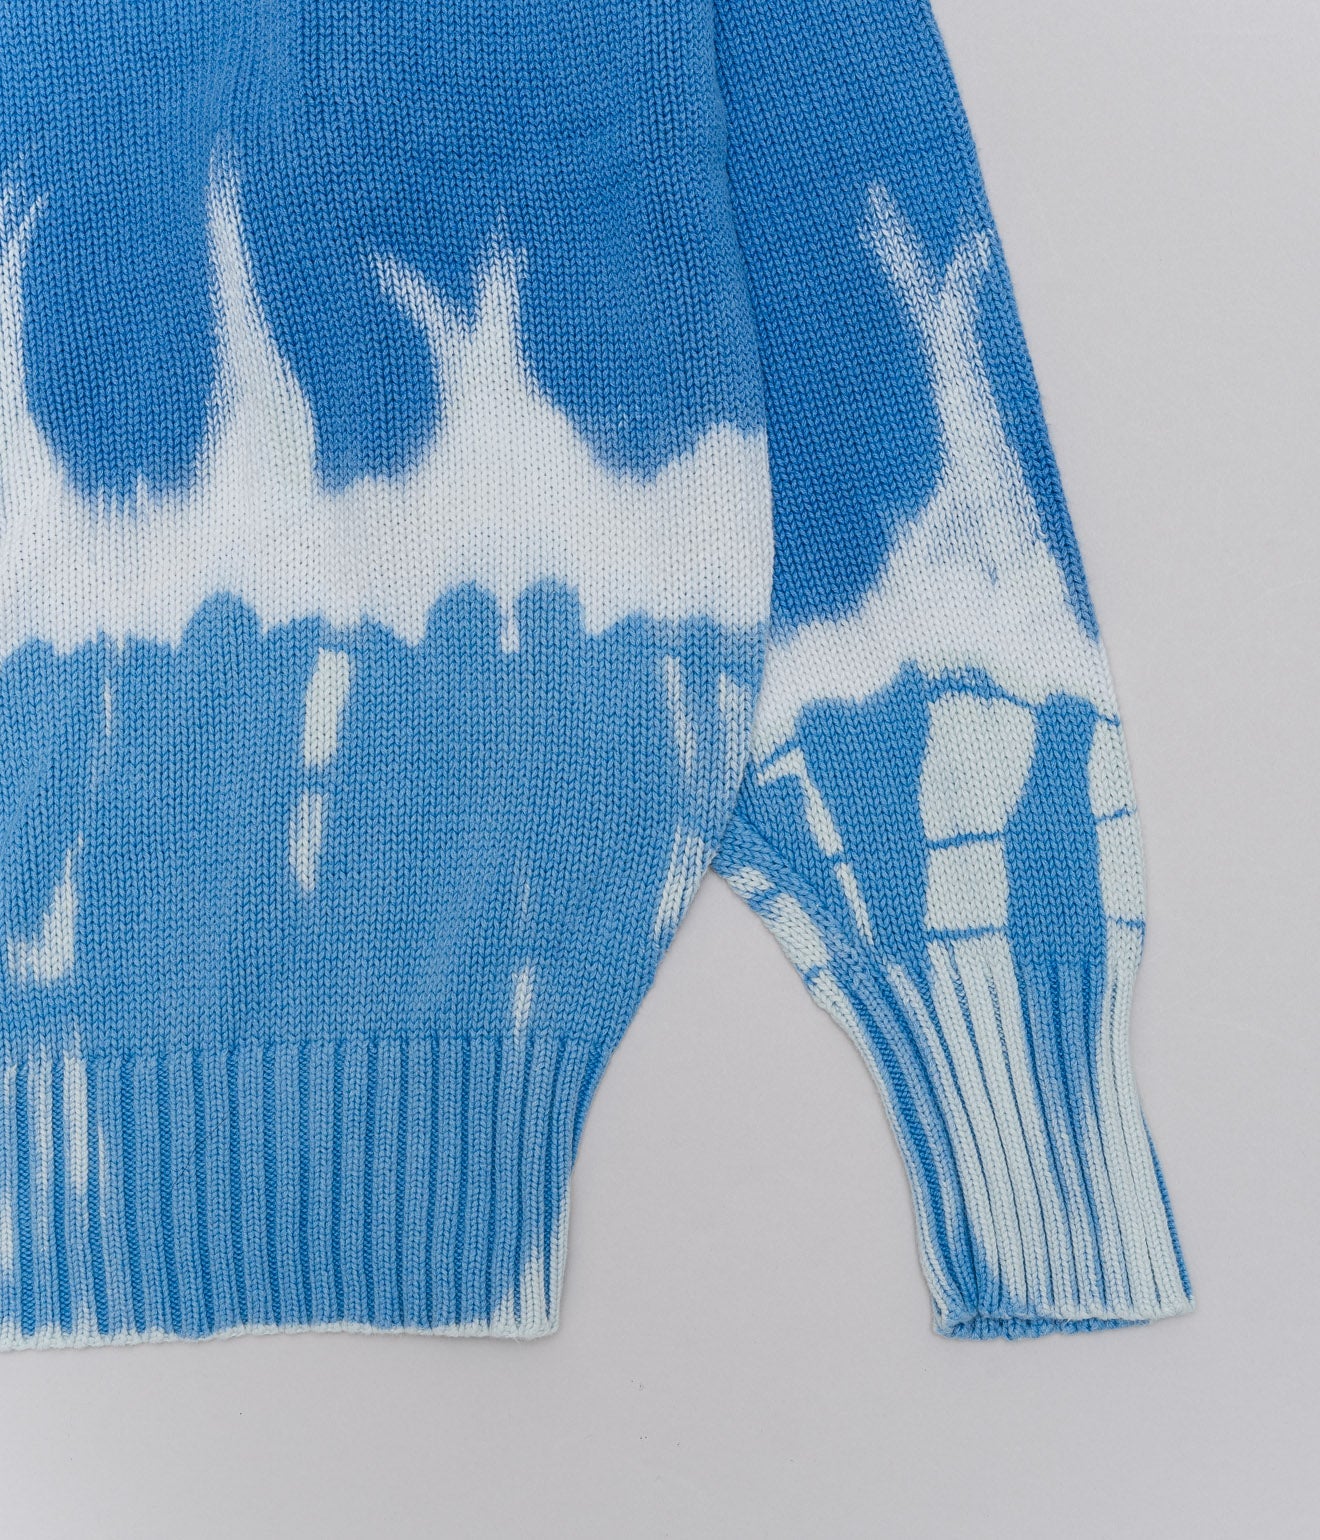 r "Tie-dye cotton sweater fire pattern" Blue - WEAREALLANIMALS